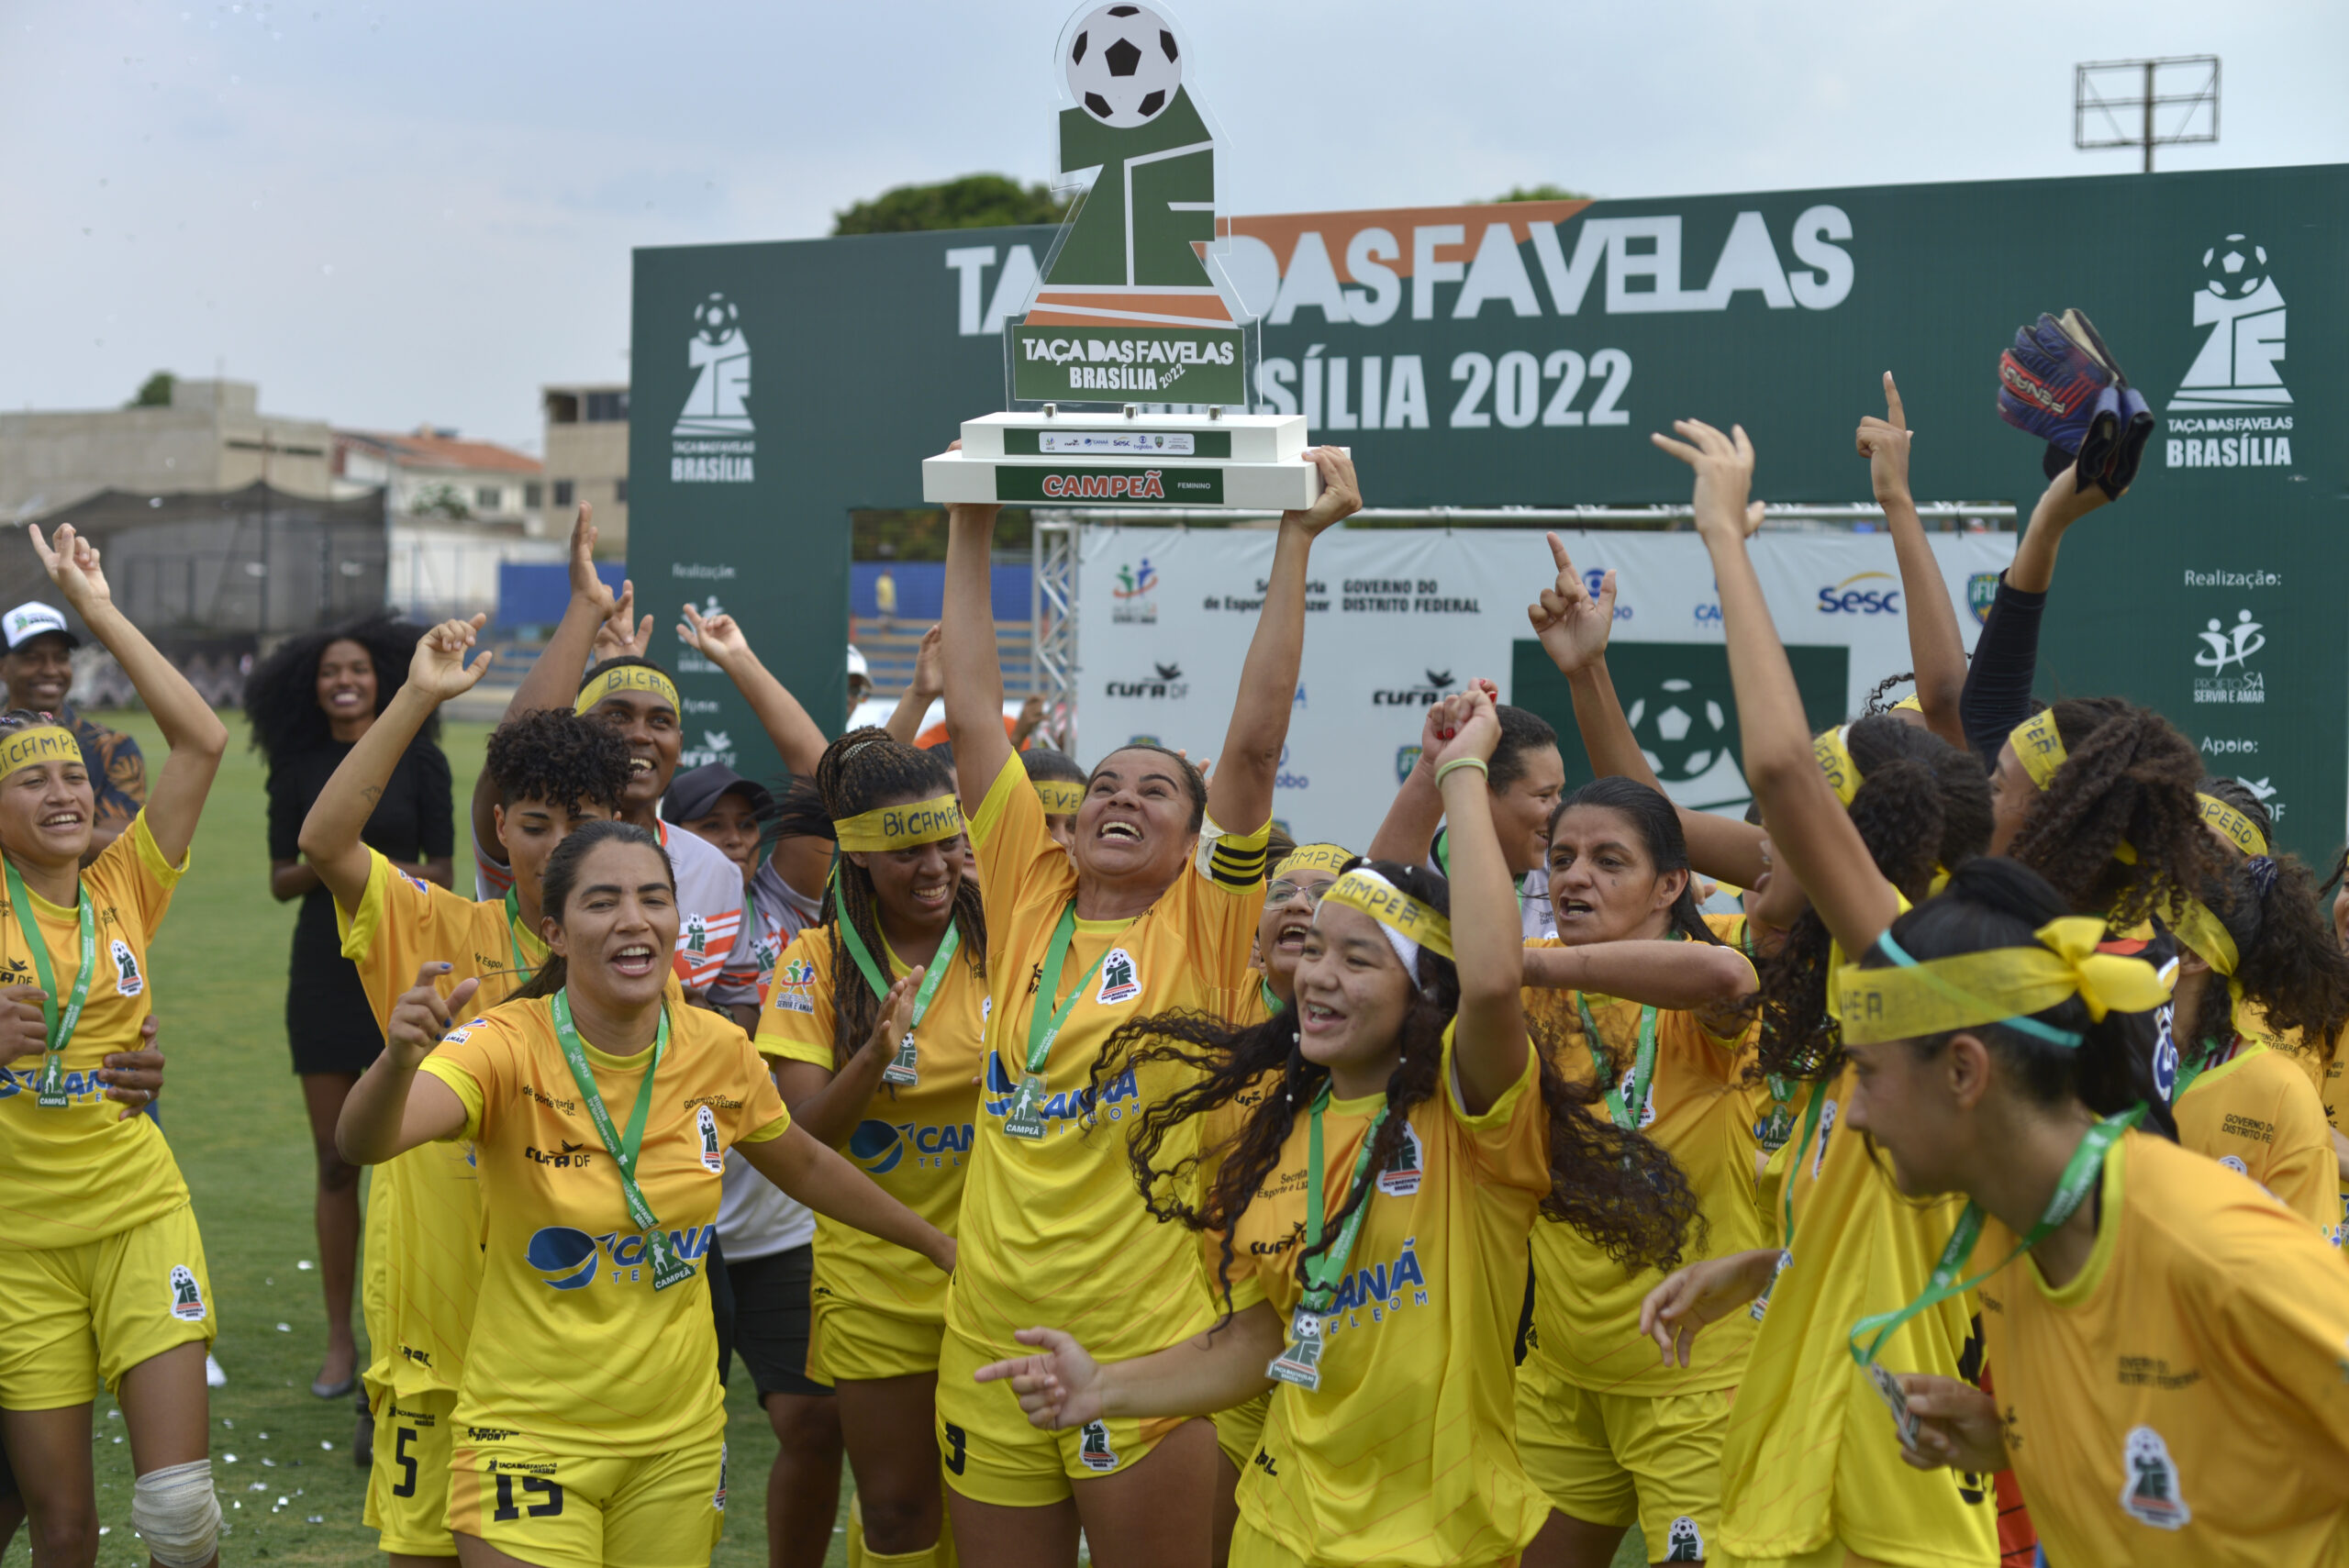 Time de Ceilândia Norte, vencedor da Taça das Favelas local neste ano, participa da competição que se inicia nesta quinta-feira (3) | Fotos: Claudio Reis